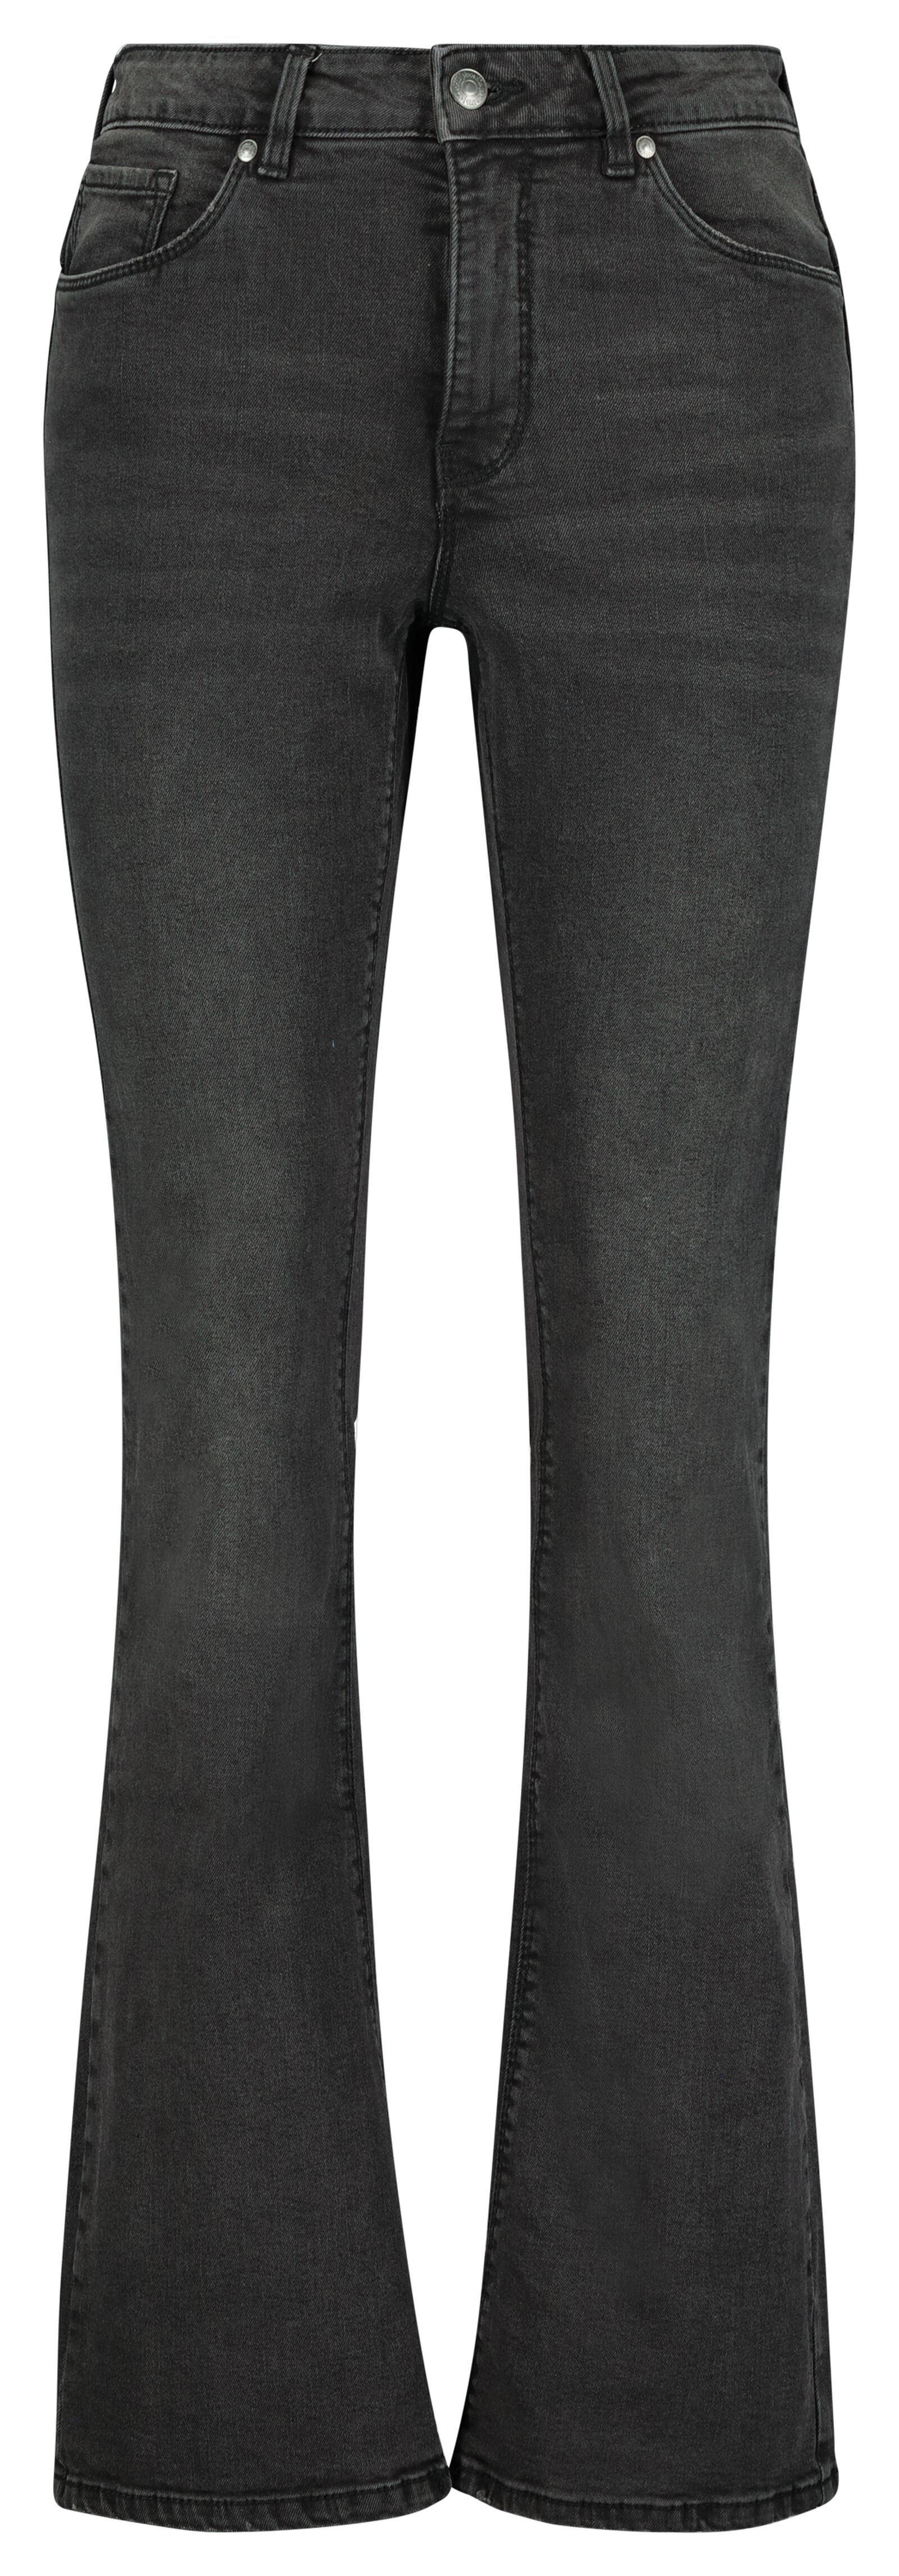 dames jeans bootcut shaping fit zwart 44 - 36291750 - HEMA